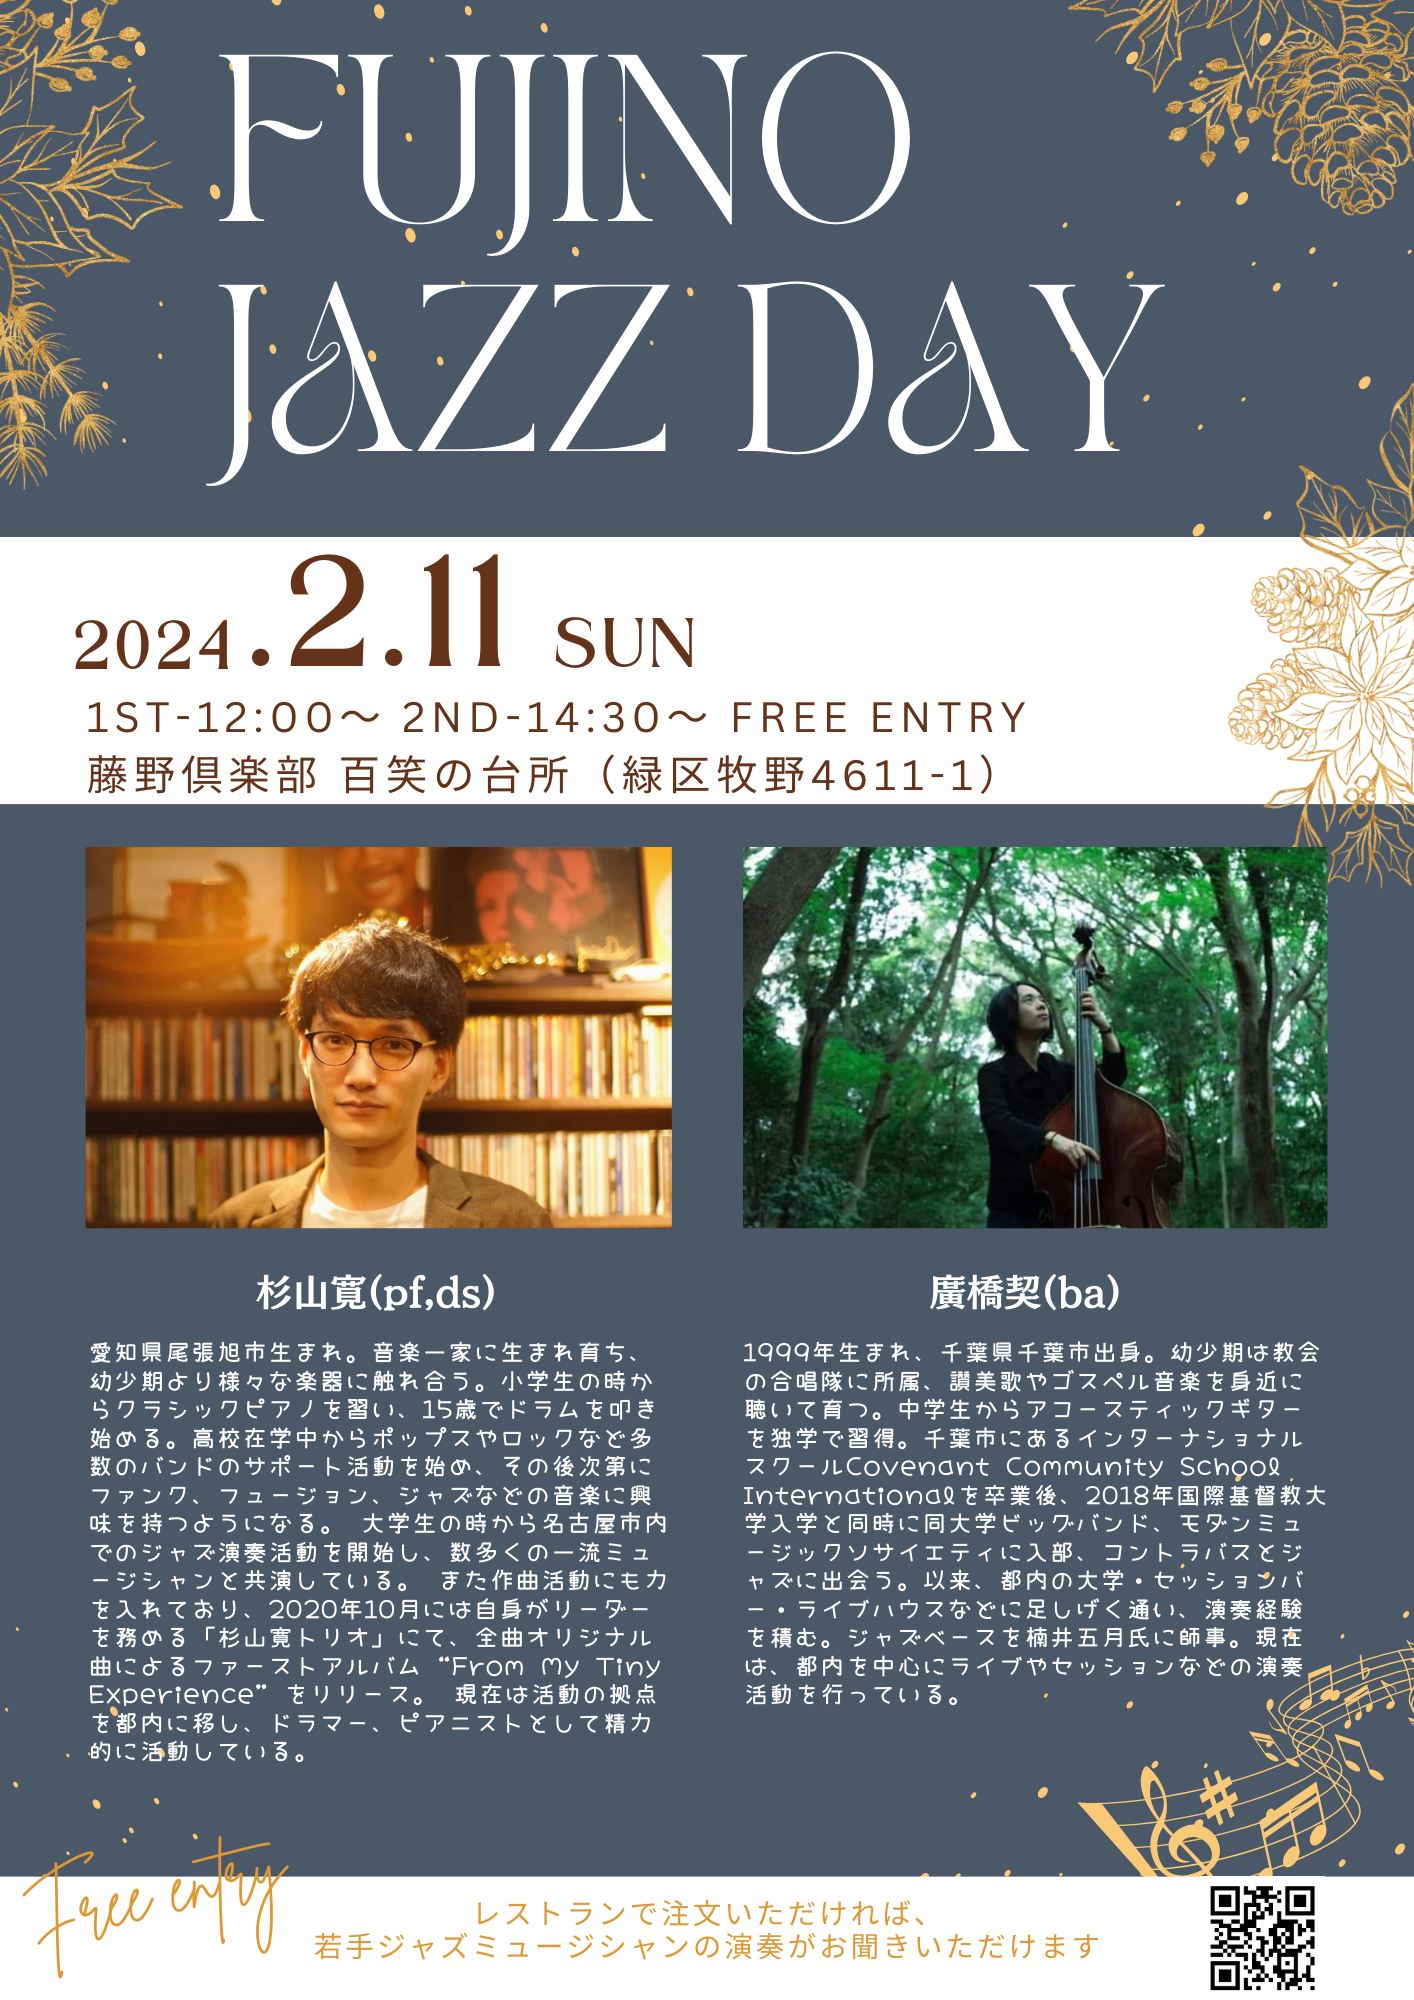 2月11日（日）、僕が毎月一回開催しているジャズライブ、題して「FUJINO JAZZ DAY」の第12回を開催します。